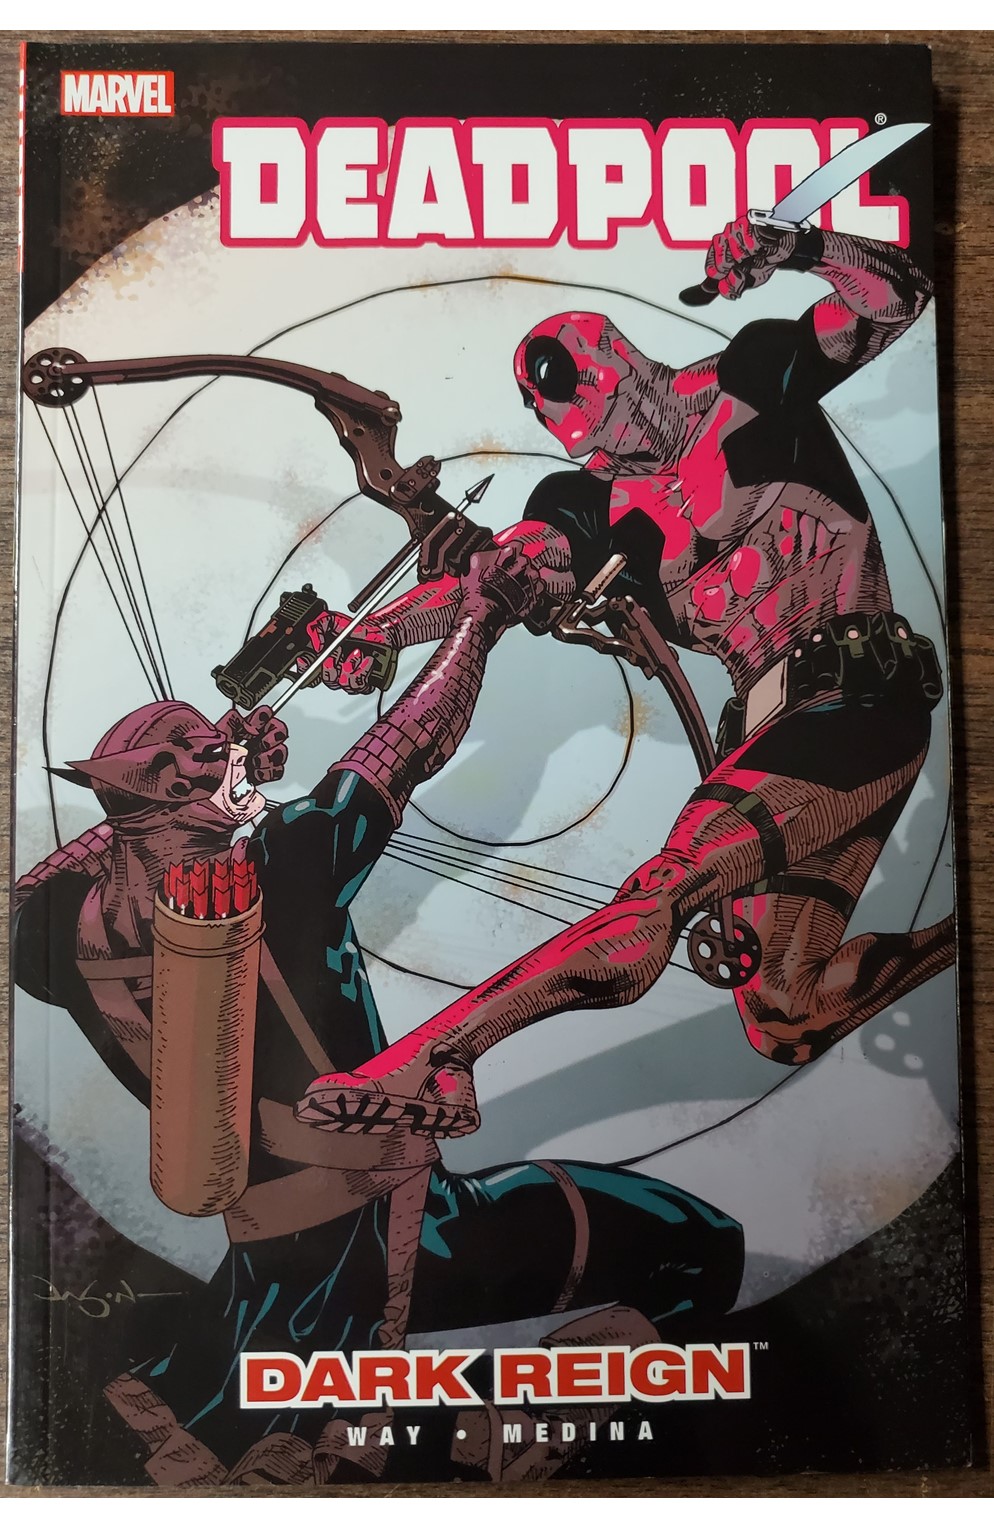 Deadpool Volume 2 Dark Reign Graphic Novel (Marvel 2009) Used - Like New